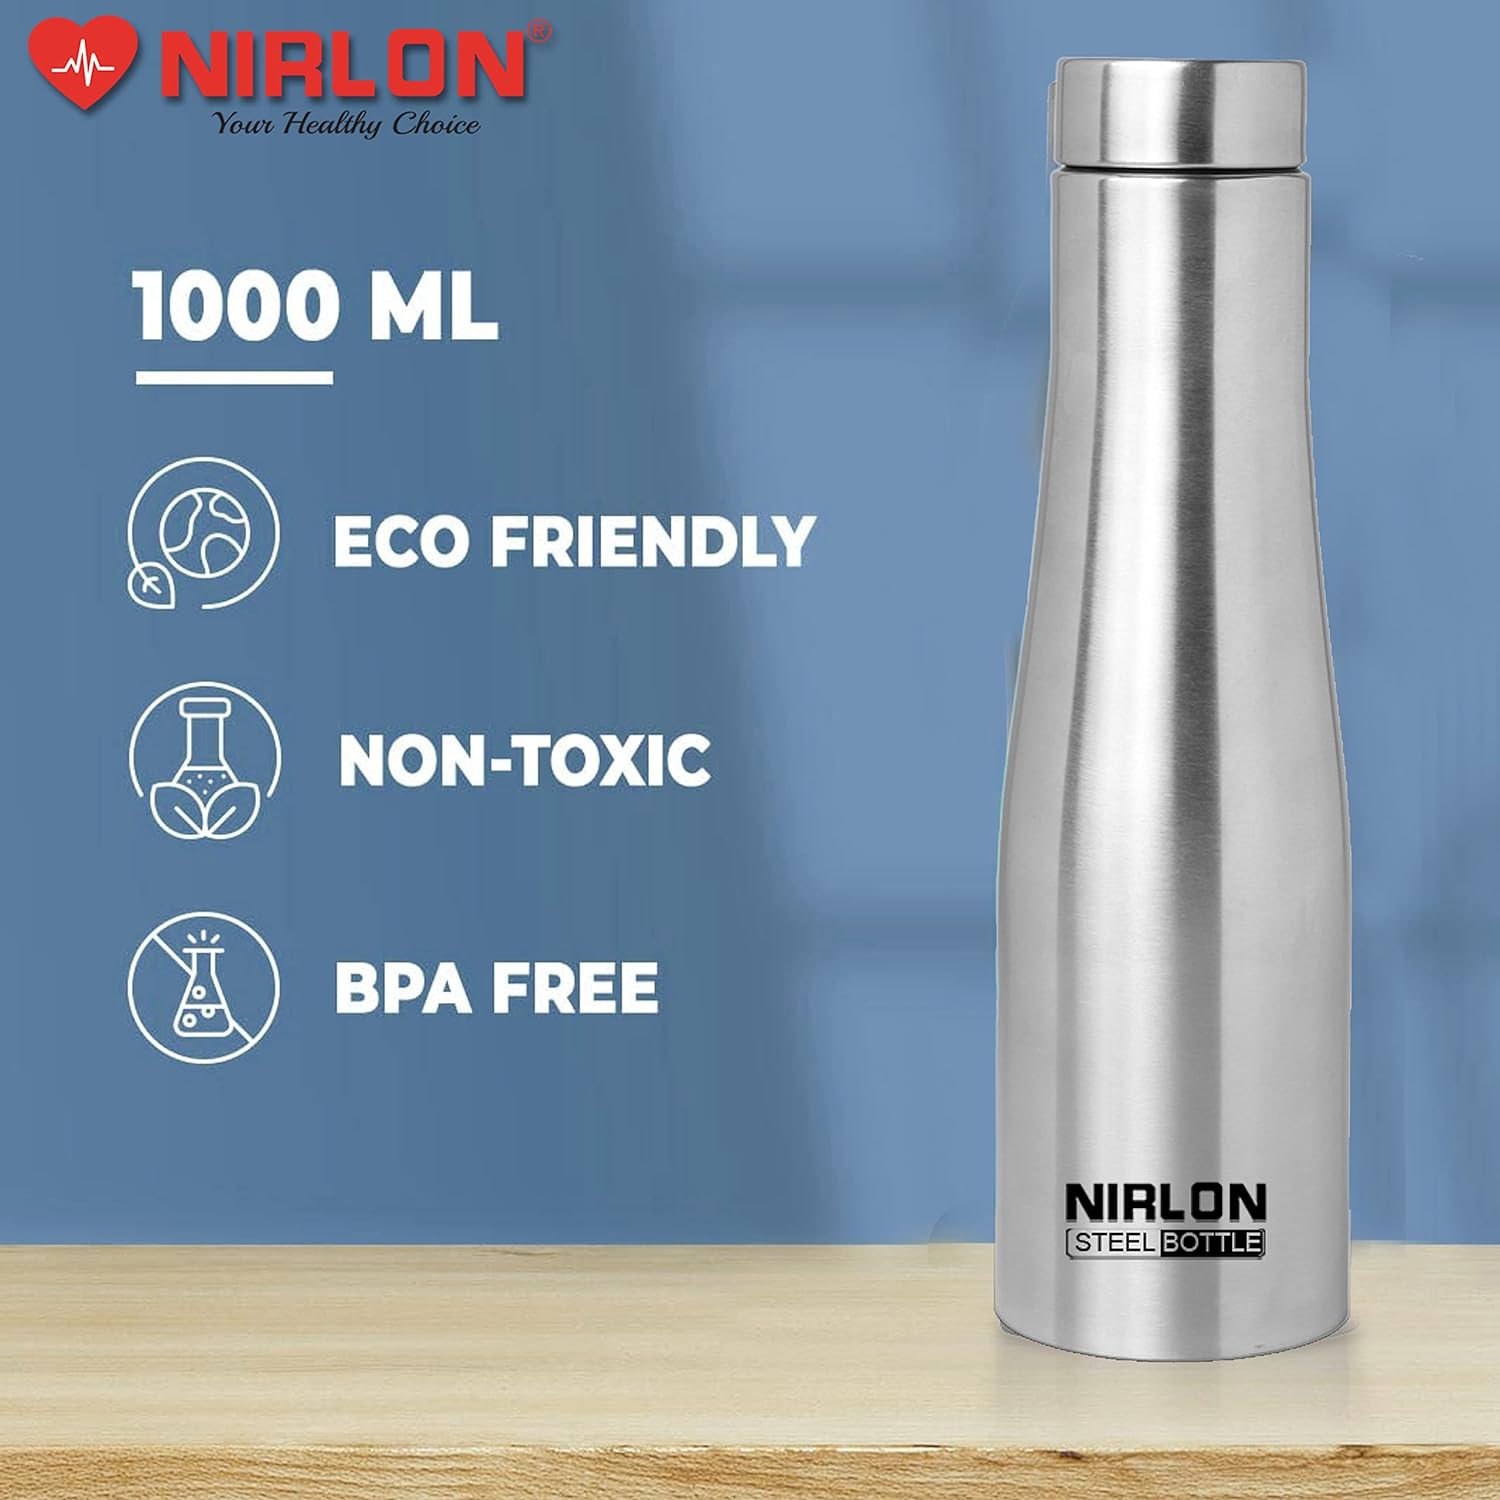 NIRLON TallBell Stainless Steel Single Wall Water Bottle/Fridge Refrigerator Bottle/ 100% Leak Proof/Office Bottle/School Bottle, 1000 ML, Set of 3